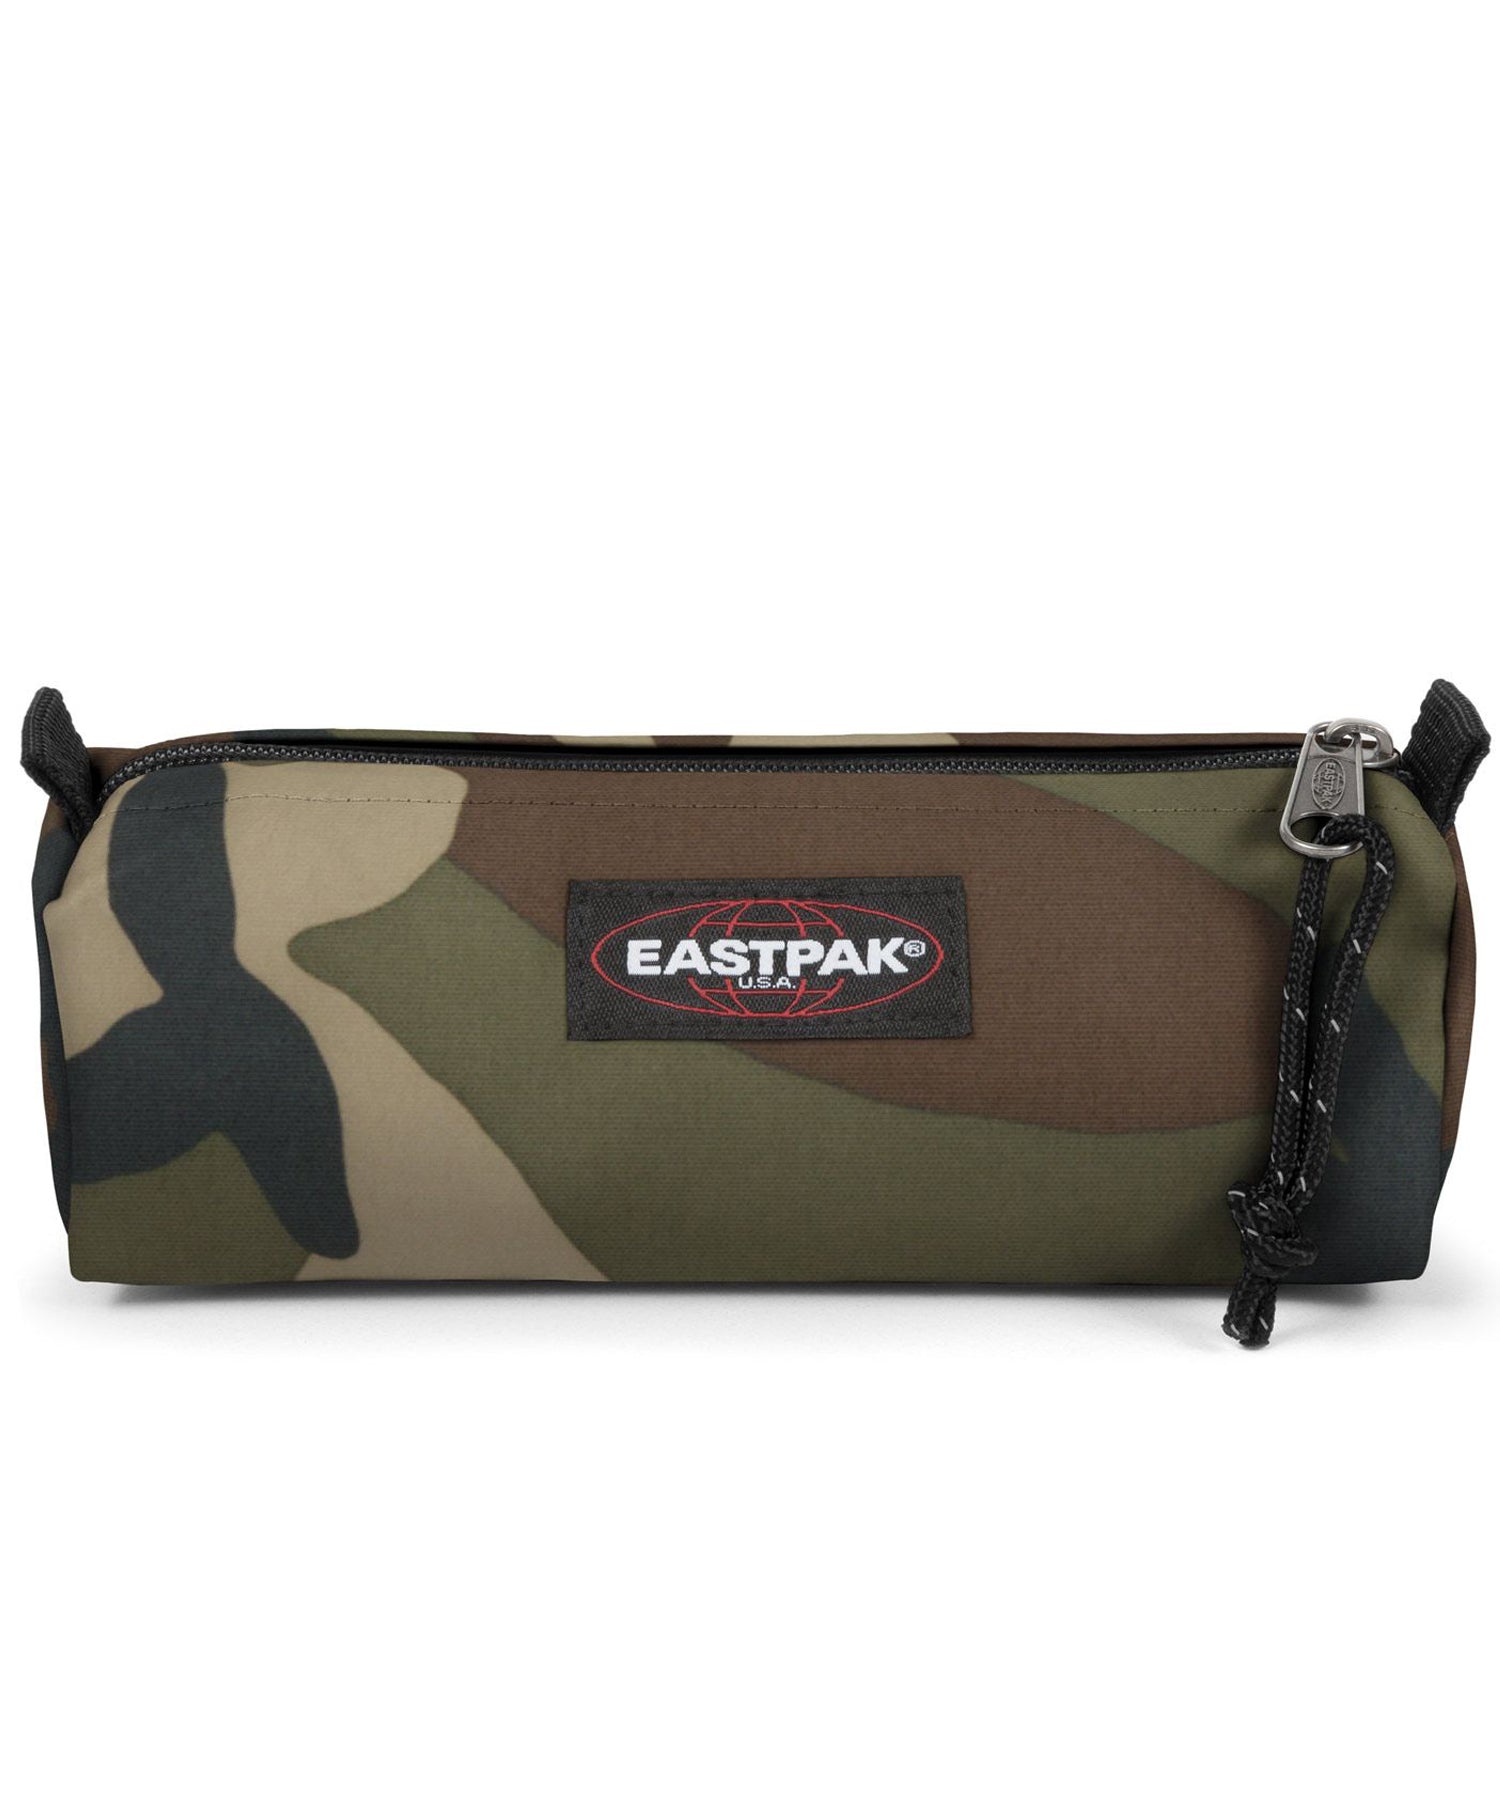 eastpak estuche benchmark de color camo, practico, sencillo, y duradero, cierre con cremallera.